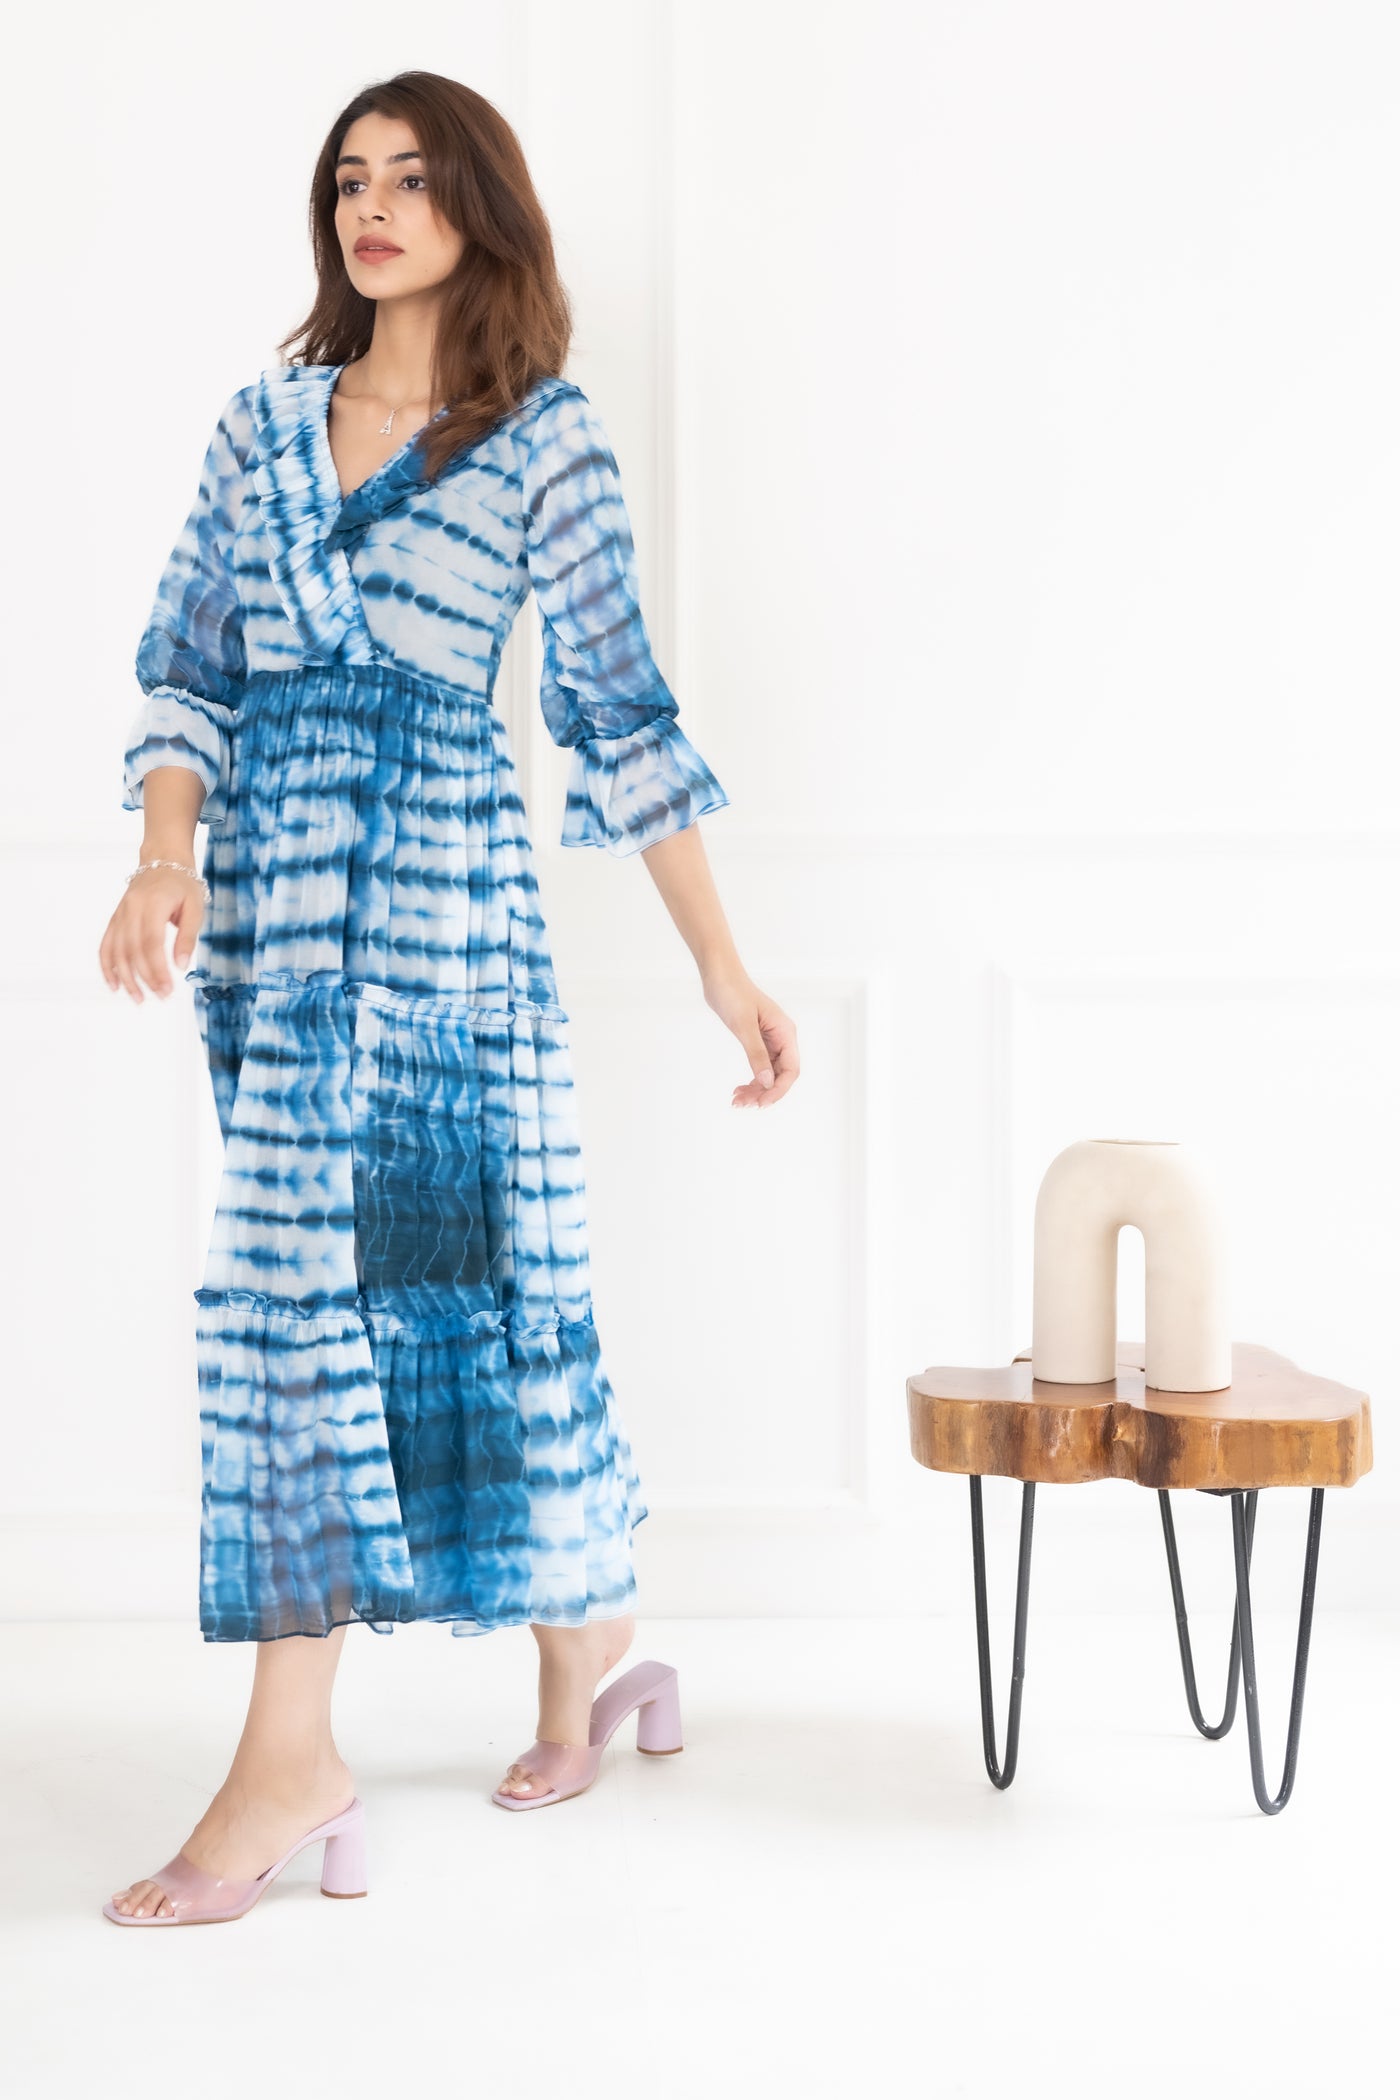 Women's Blue Shibori Chiffon Dress by Saras The Label (1 Pc Set)